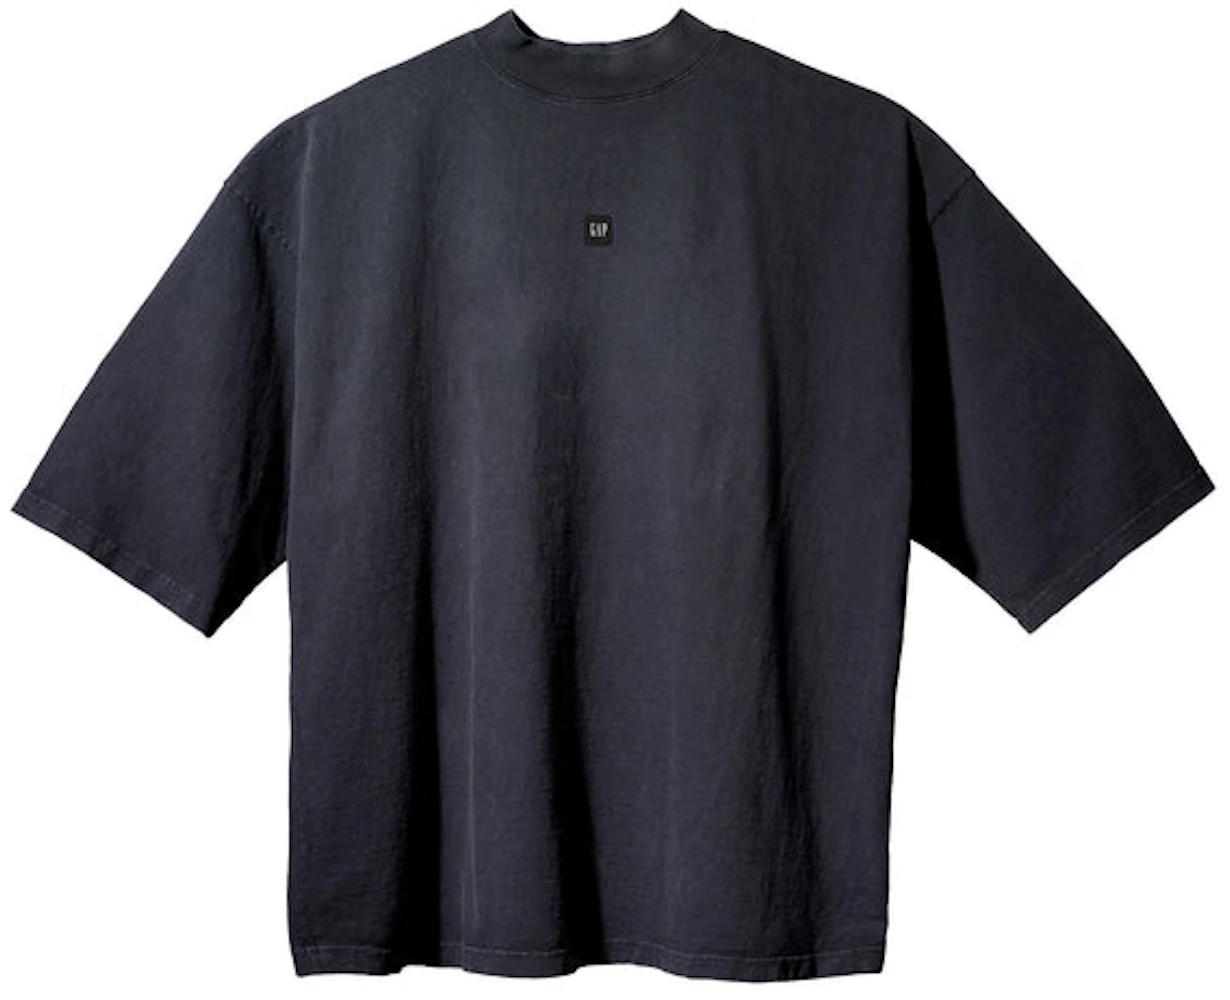 Yeezy Gap Engineered by Balenciaga Logo 3/4 Sleeve Tee Black - SS22 - US